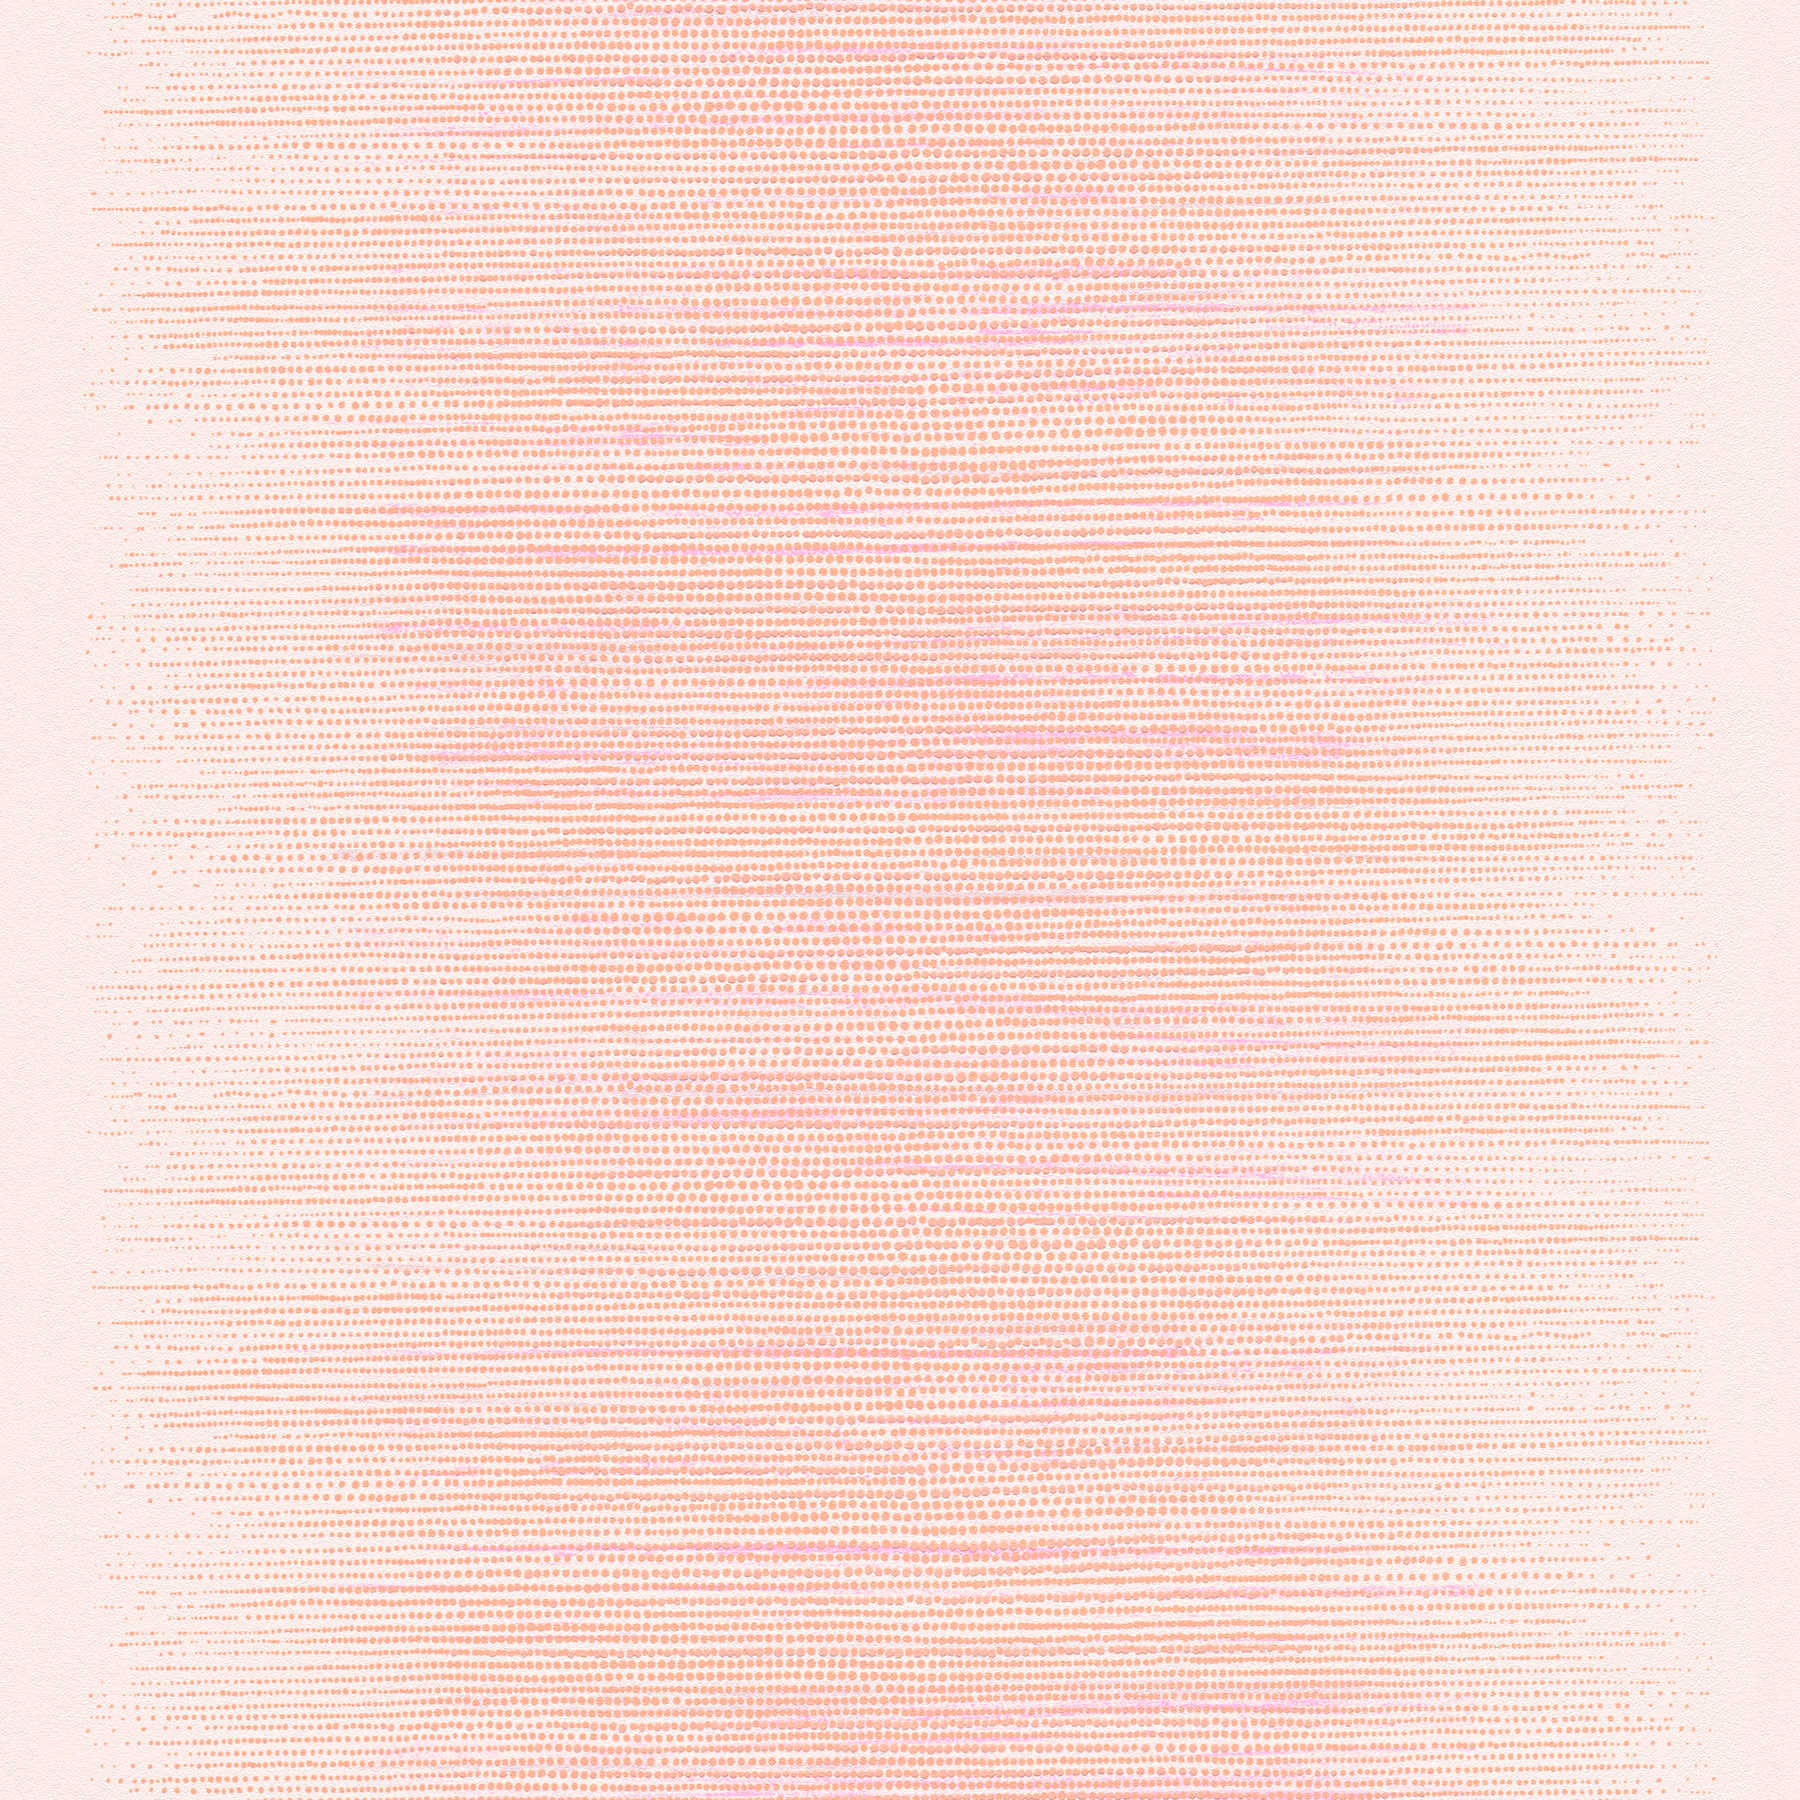         Papier peint à pois style scandinave - rose, orange, beige
    